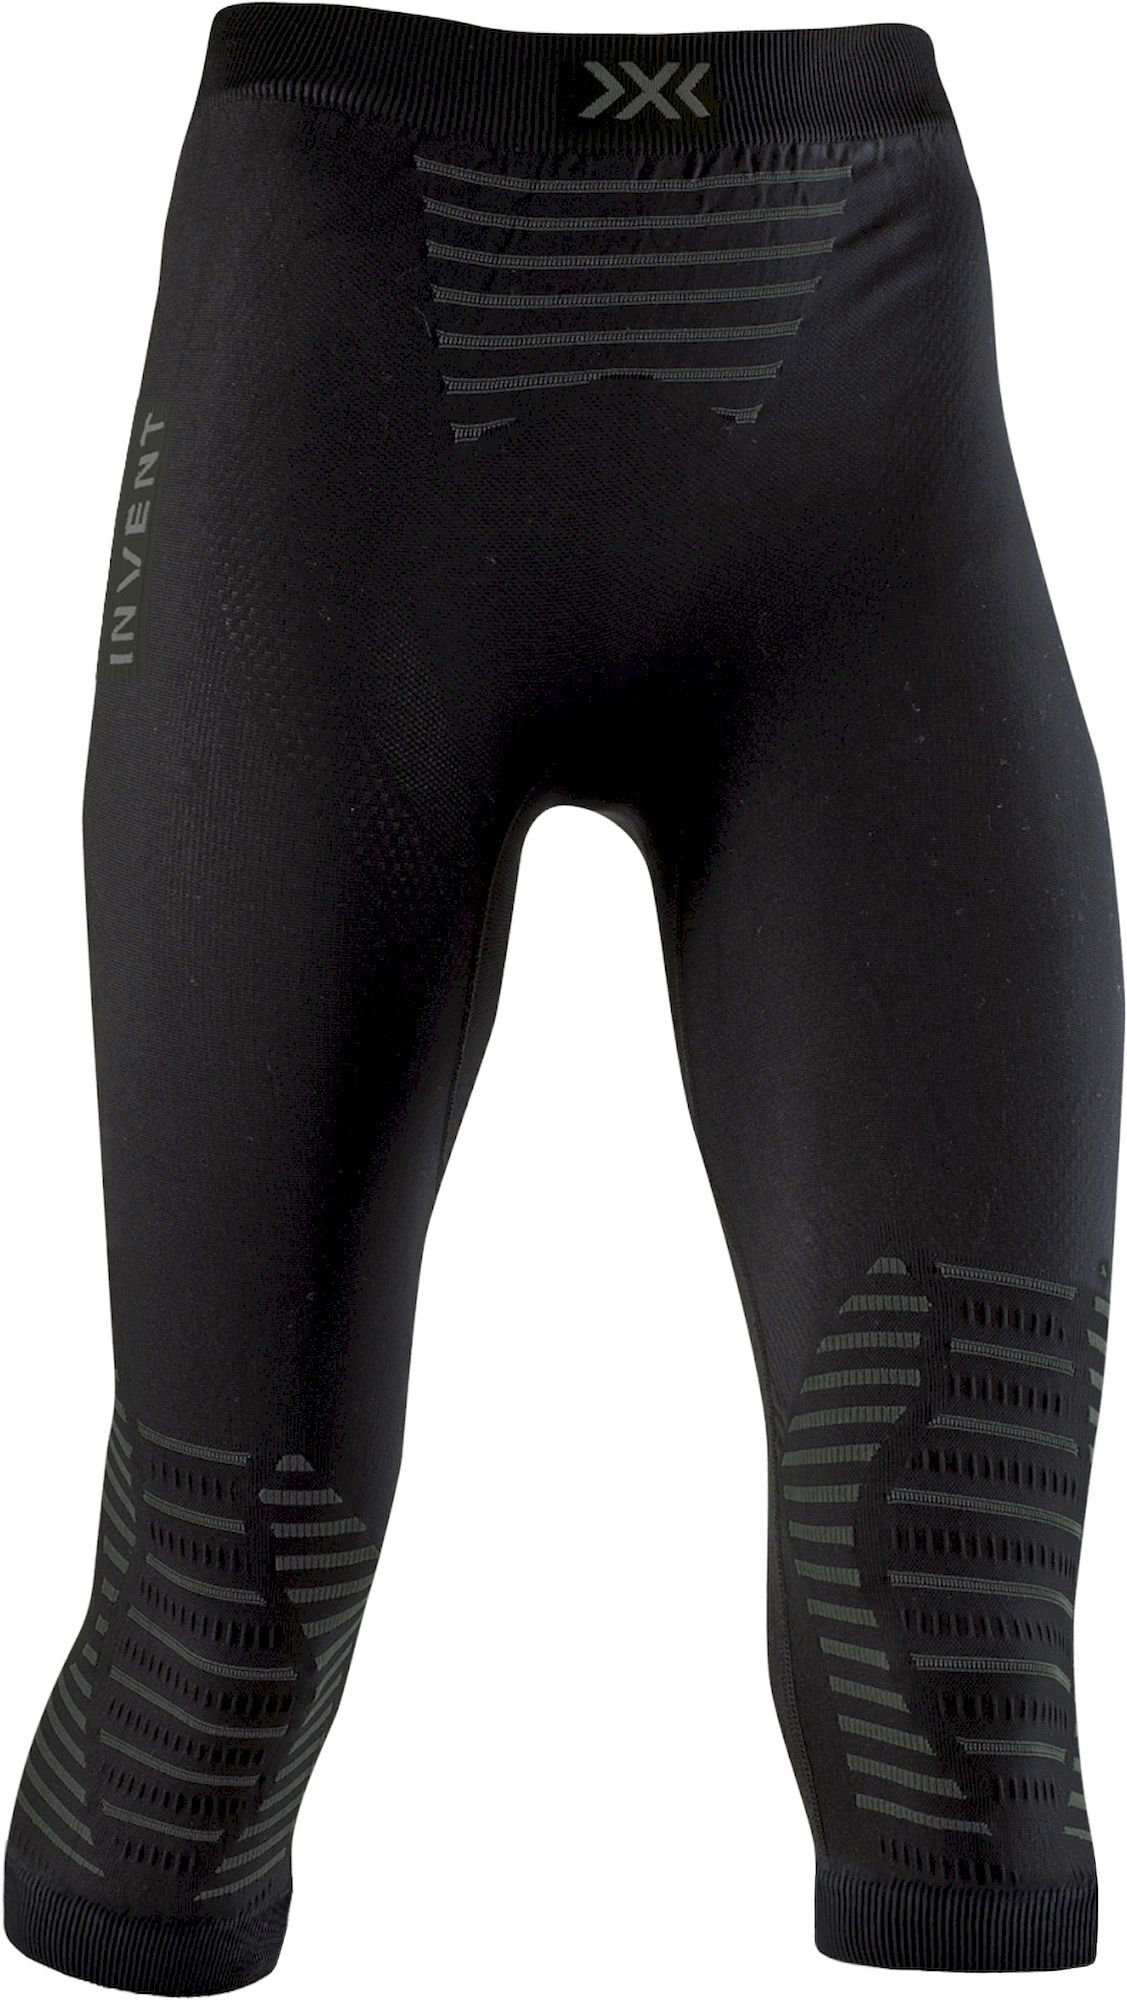 X-Bionic Invent 4.0 Pants 3/4  - Collant thermique femme